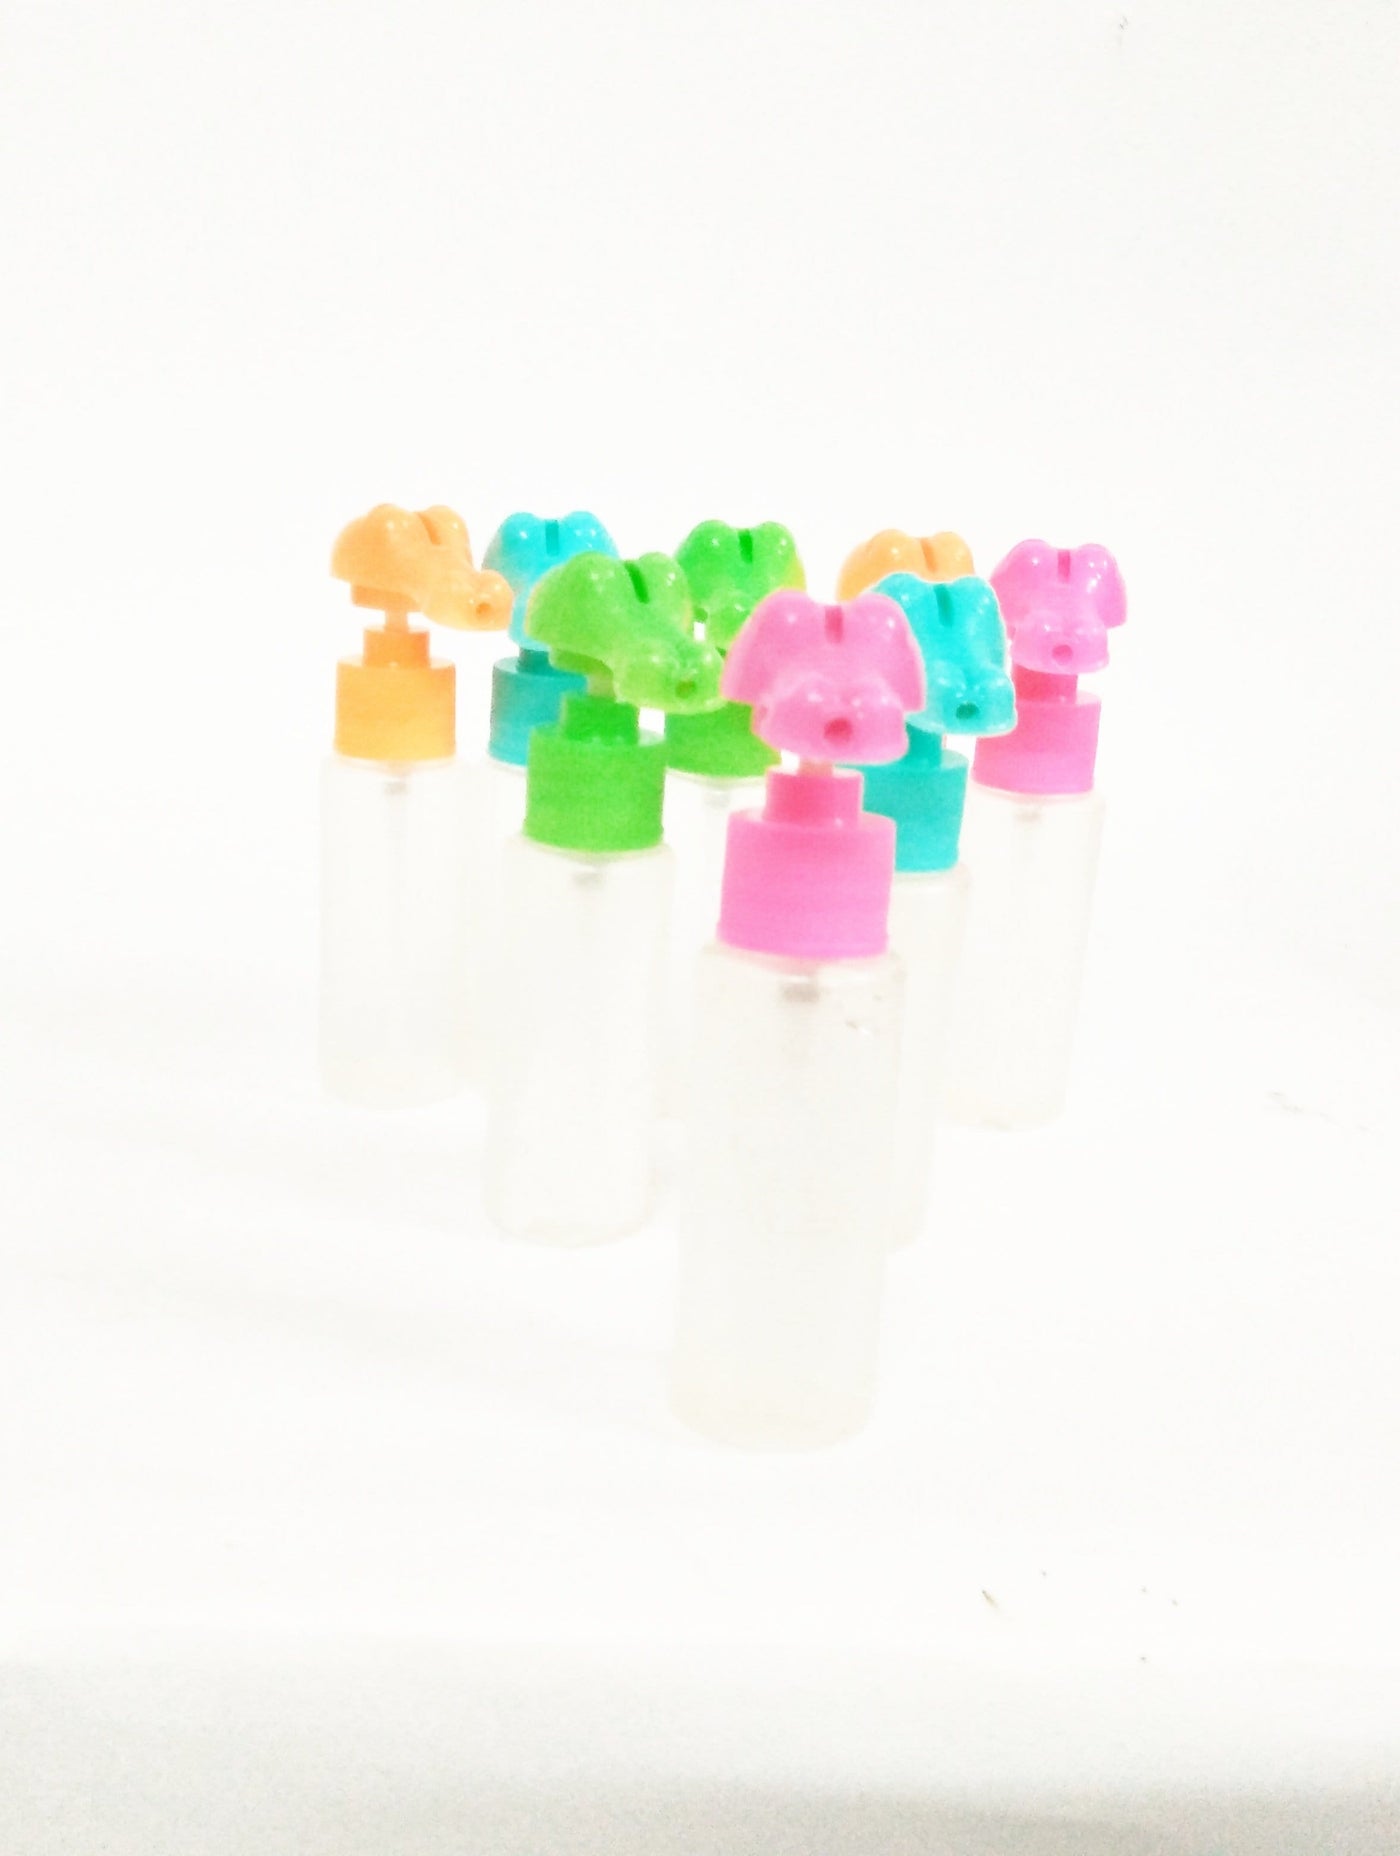 Lamansh™ Mini Spray Bottles 10 ml / Nano Mist Spray Bottles For Filling Sanitizer Pack of 100 - Lamansh